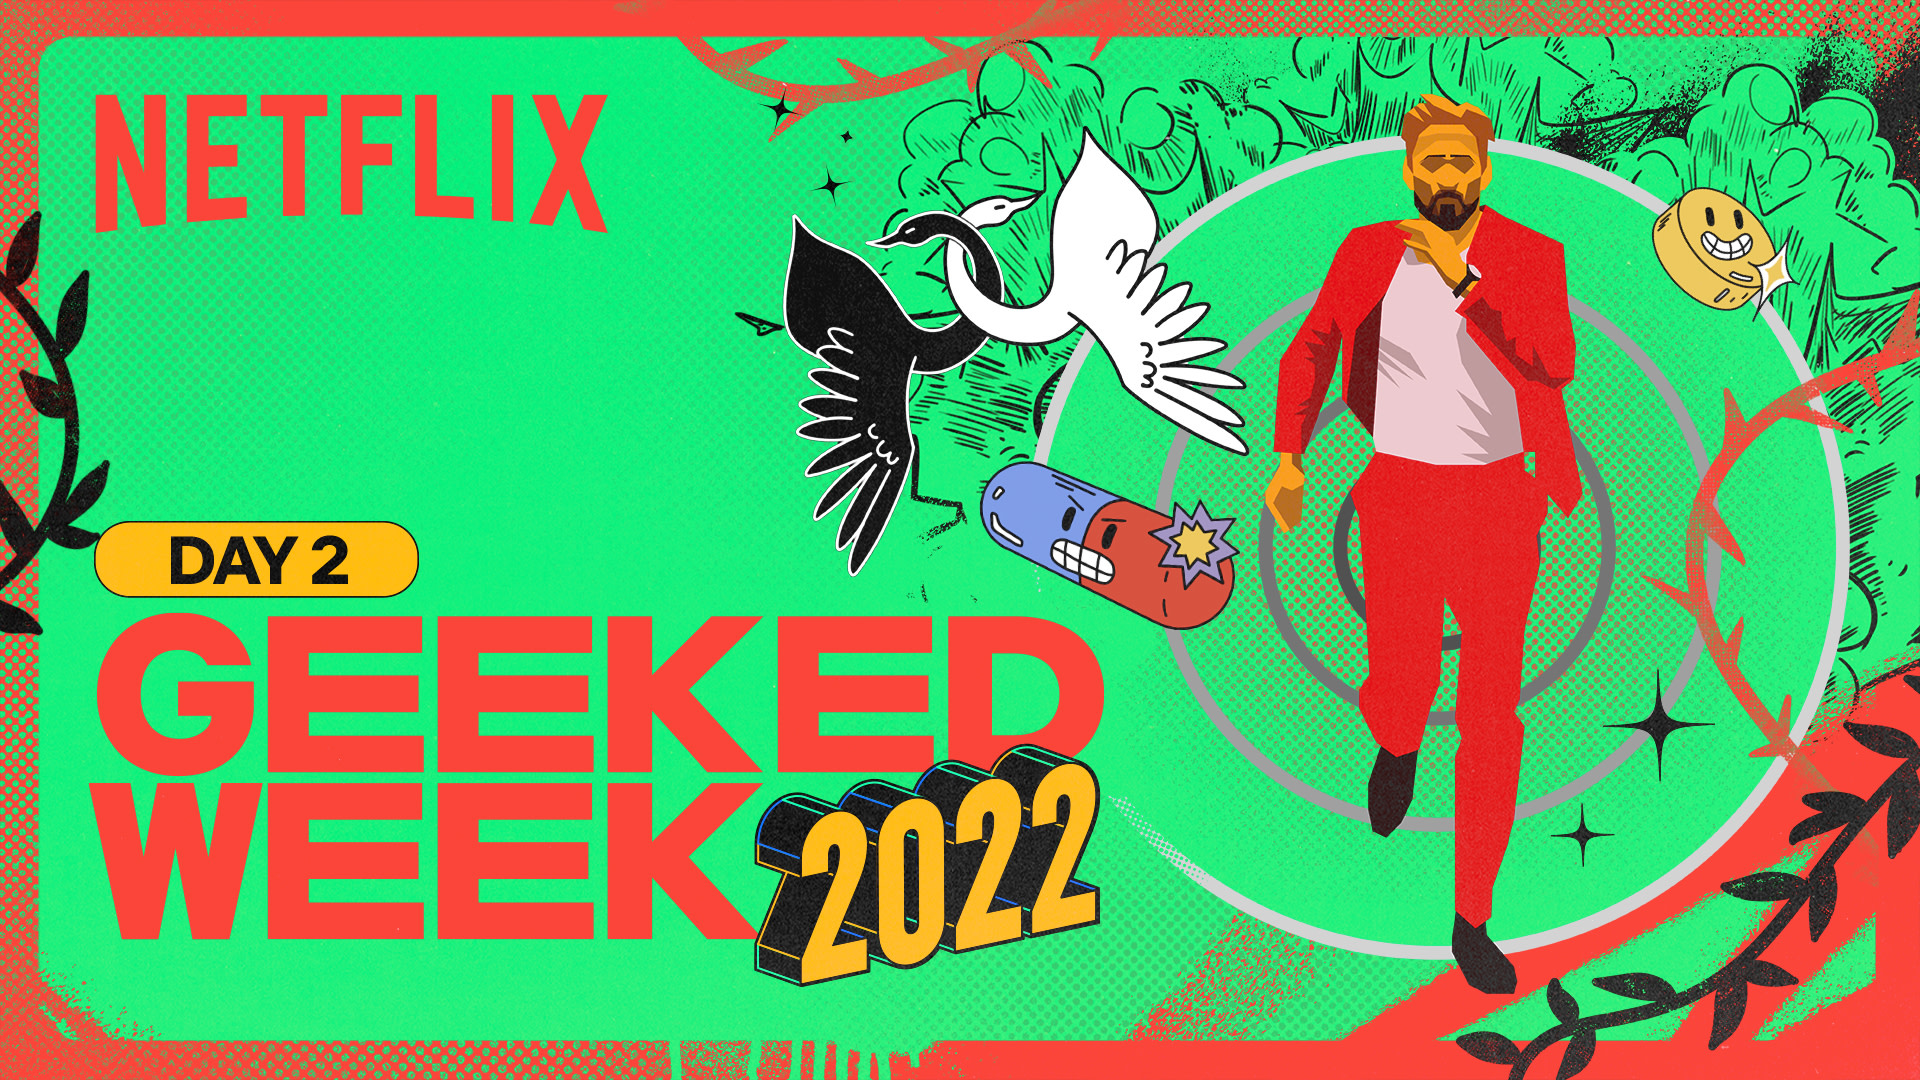 Geeked Week 2022 Özeti: Film Gününden Tüm Haberler ve Ön Gösterimler 